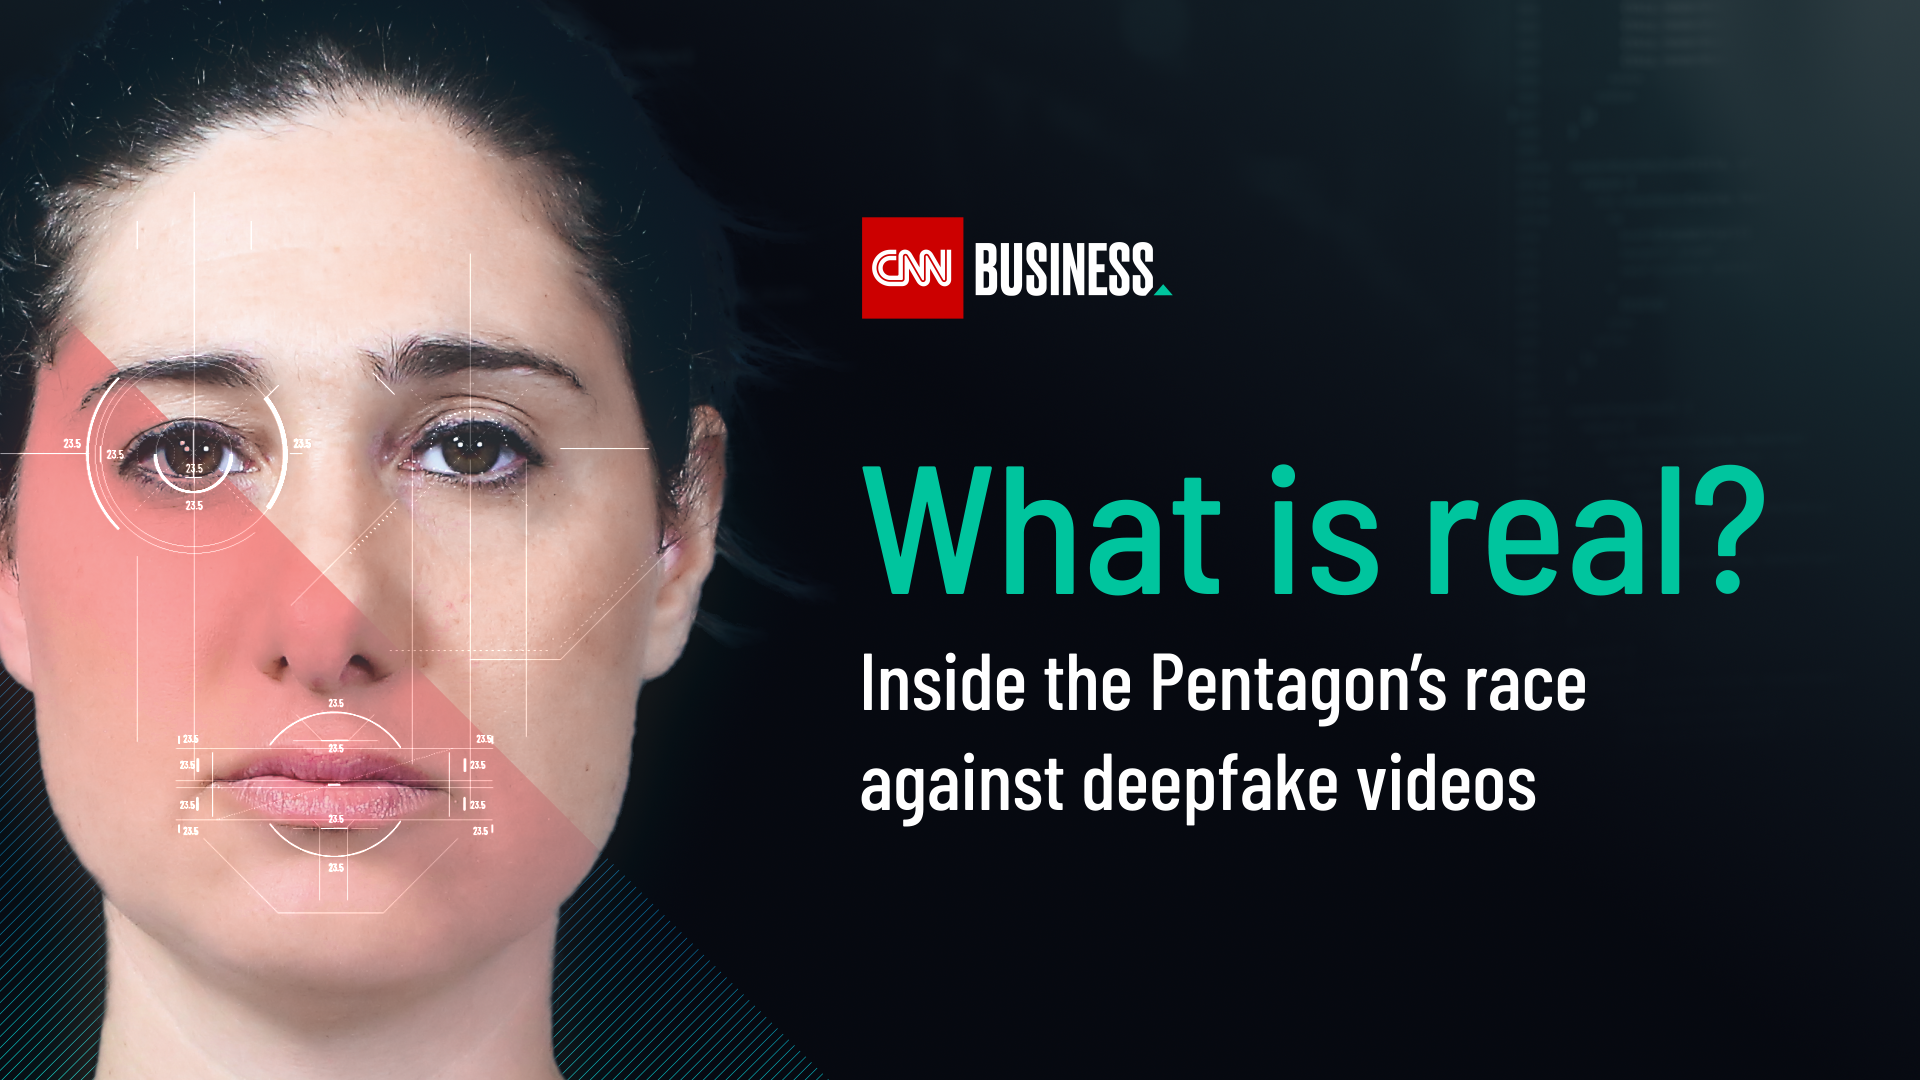 http://cdn.cnn.com/cnn/2019/images/01/29/cnn_business_deepfakes_marketingstill.png